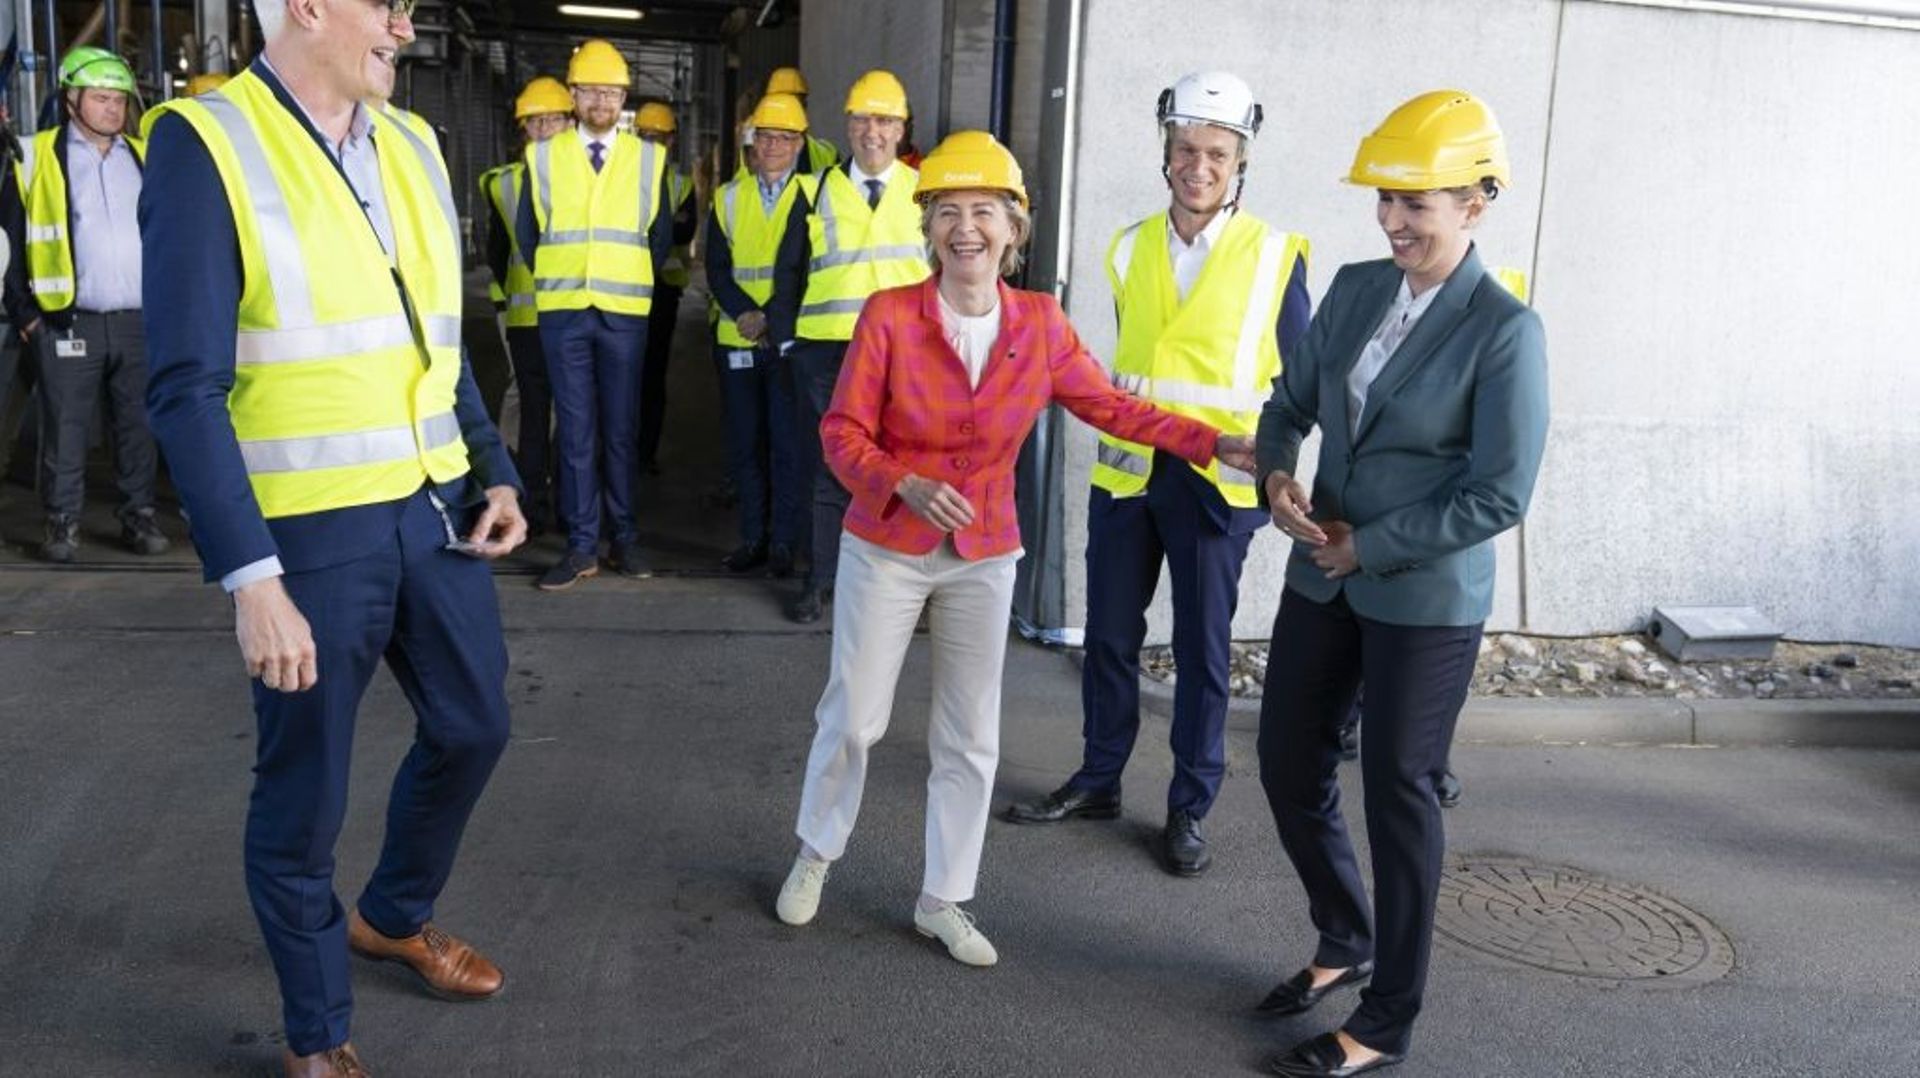 La présidente de la Commission Ursula von der Leyen (au centre) visite une centrale thermique à Hvidovre, au Danemark le 17 juin 2021, avec notamment la Première ministre danoise Mette Frederiksen